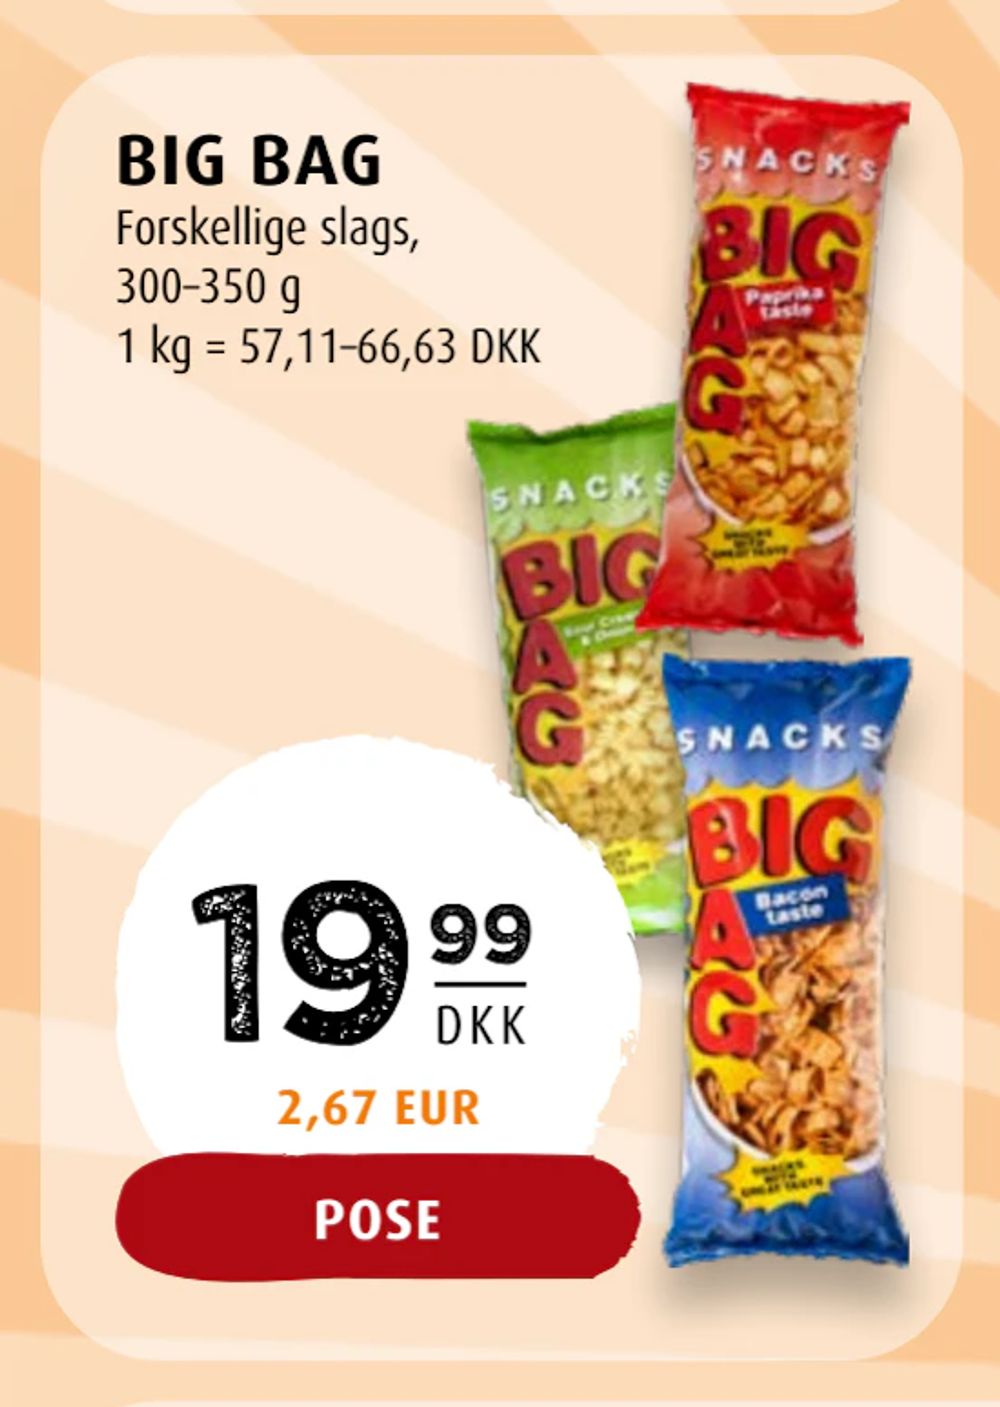 Tilbud på BIG BAG fra Scandinavian Park til 19,99 kr.